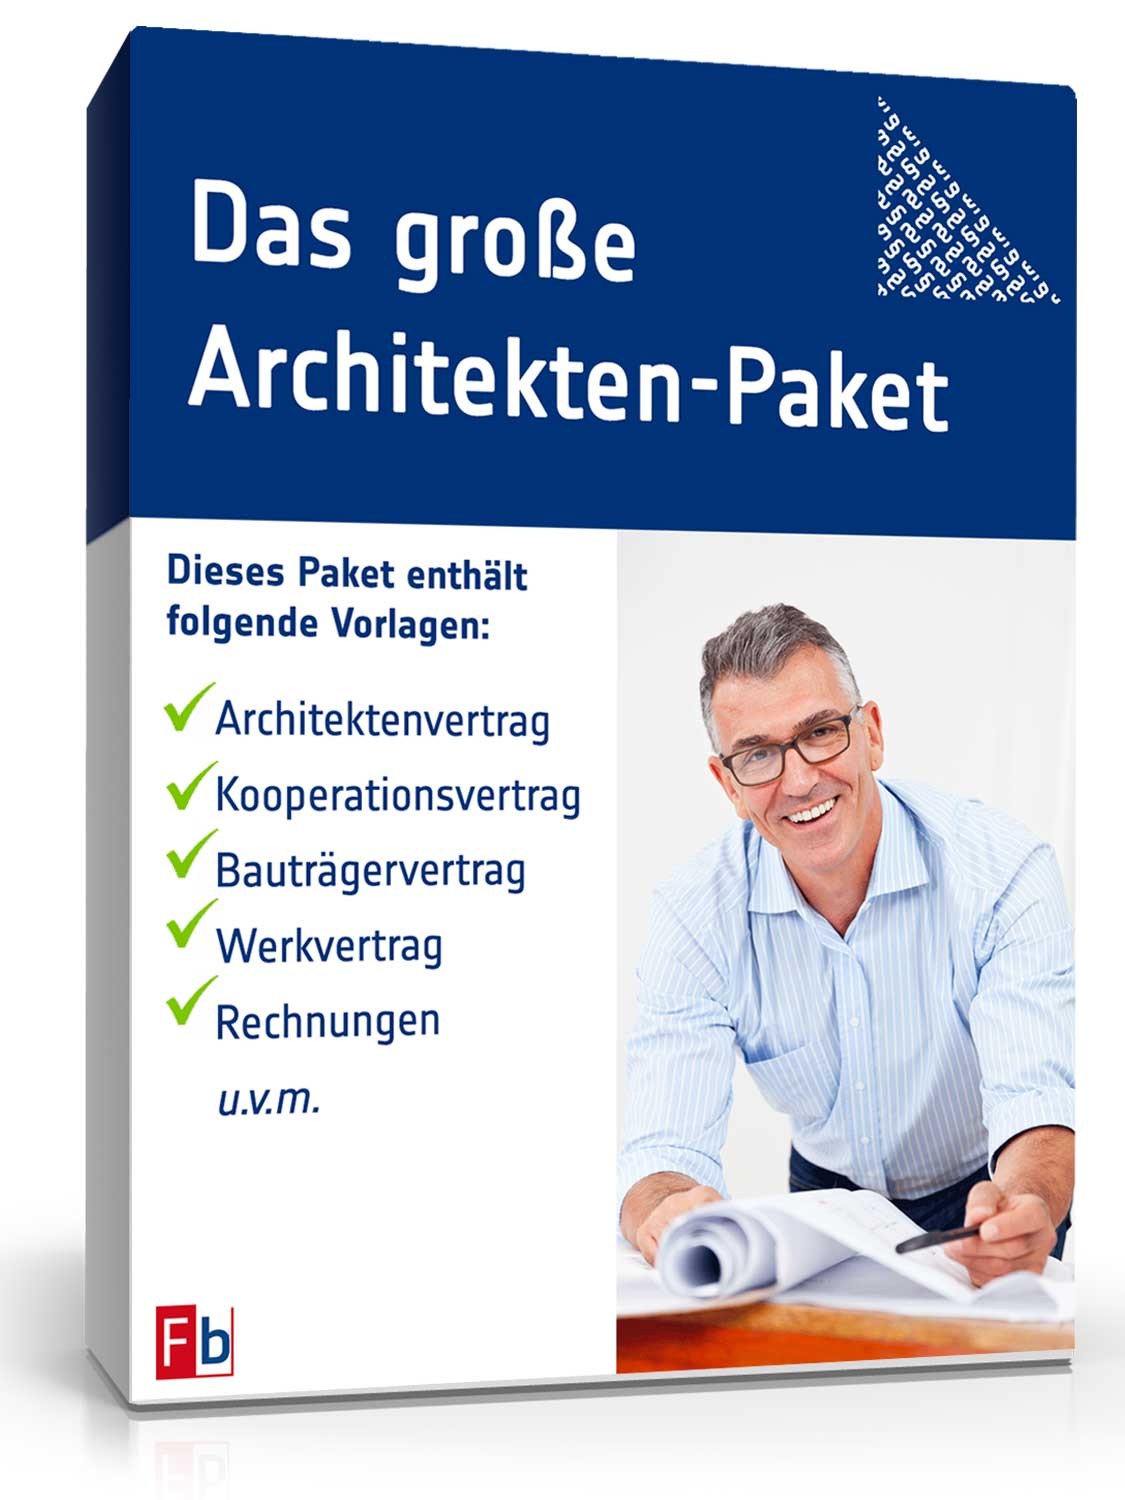 Hauptbild des Produkts: Das große Architekten-Paket